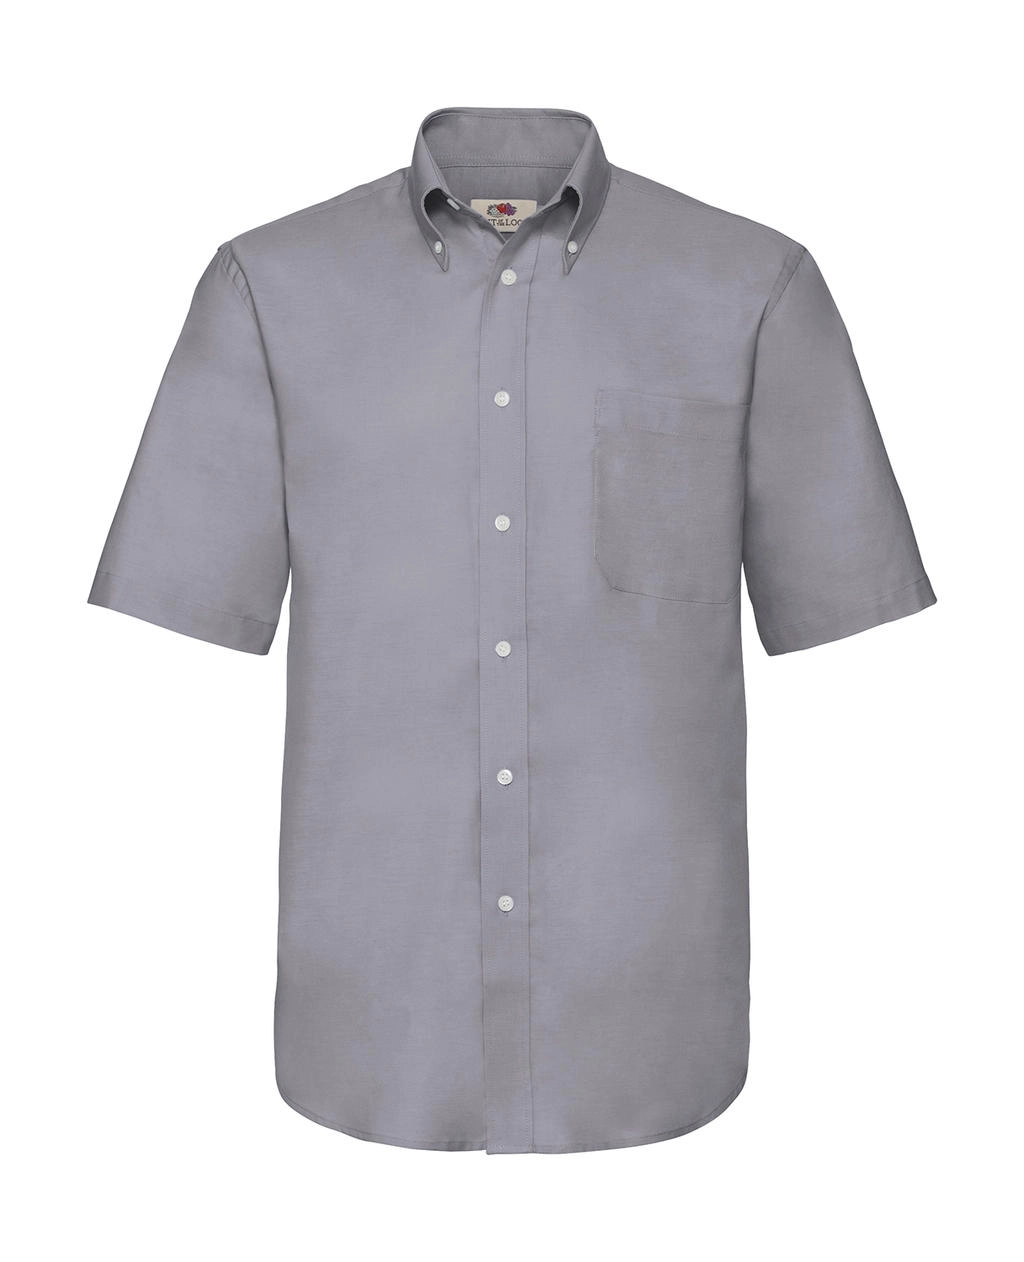 Oxford Shirt zum Besticken und Bedrucken in der Farbe Oxford Grey mit Ihren Logo, Schriftzug oder Motiv.